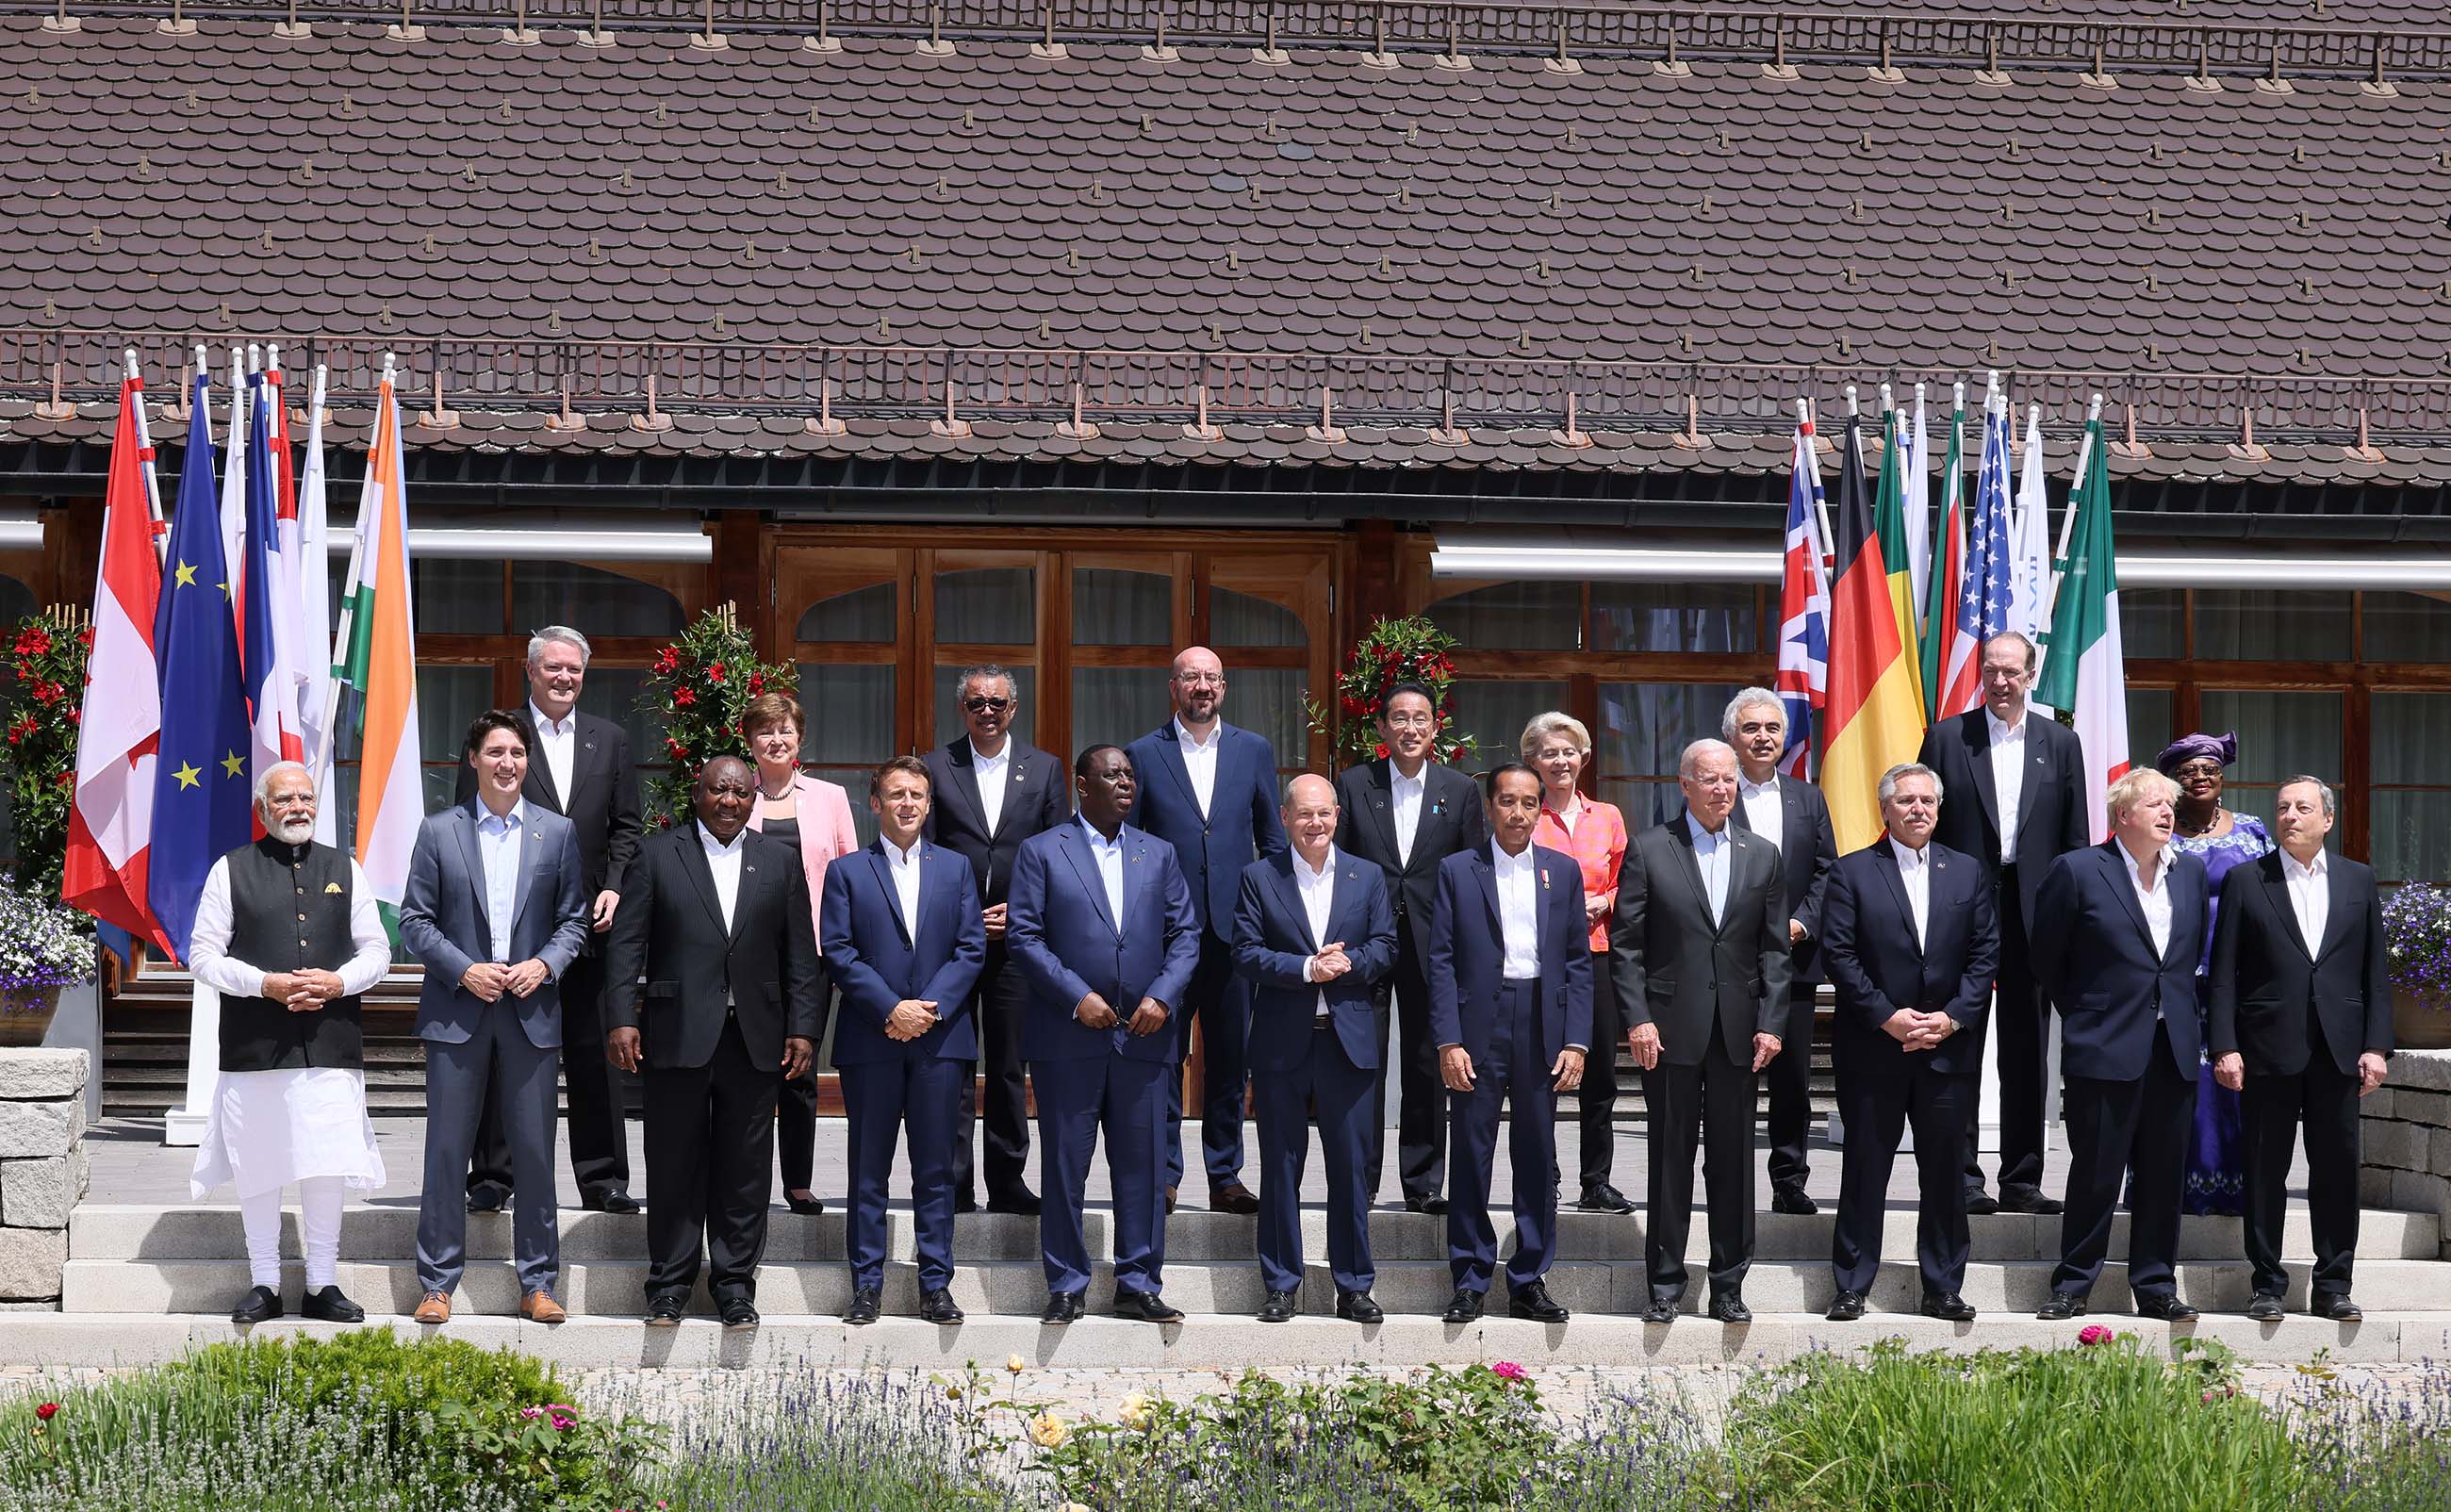 七国集团(G7)埃尔茂峰会及与各国的首脑会谈 -第2天-